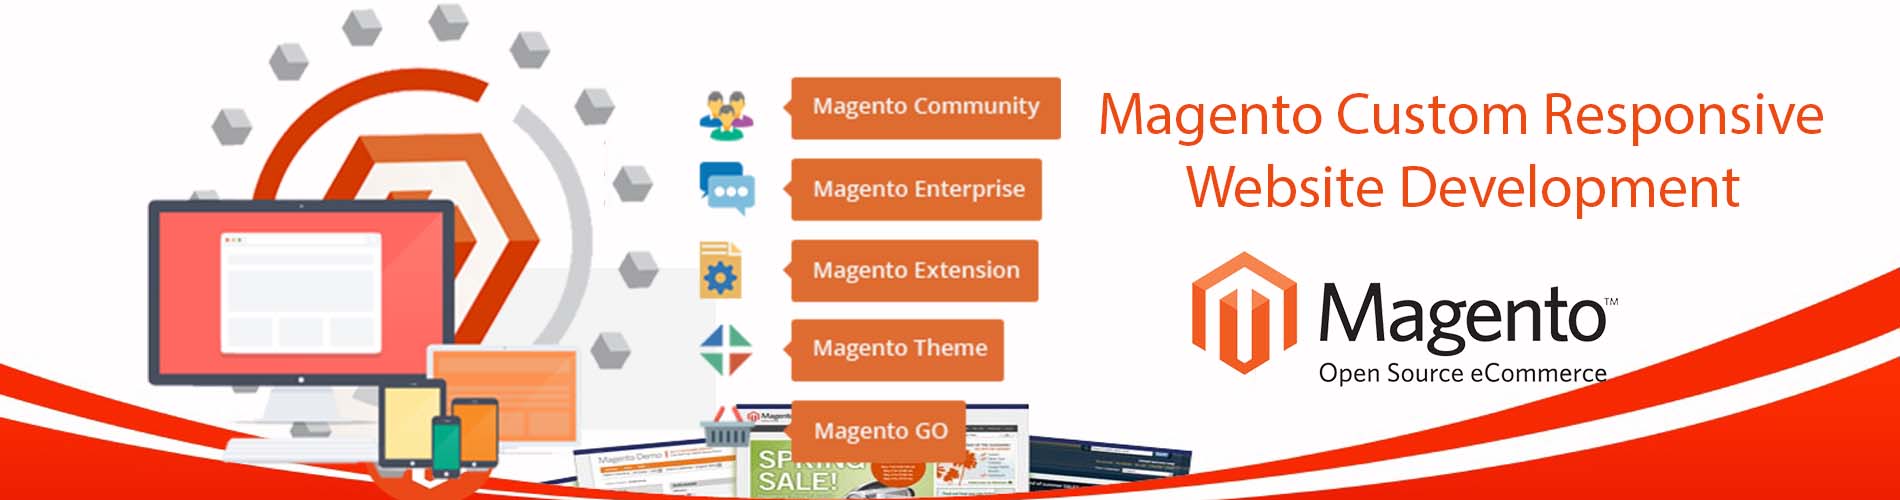 magento-website-development-company